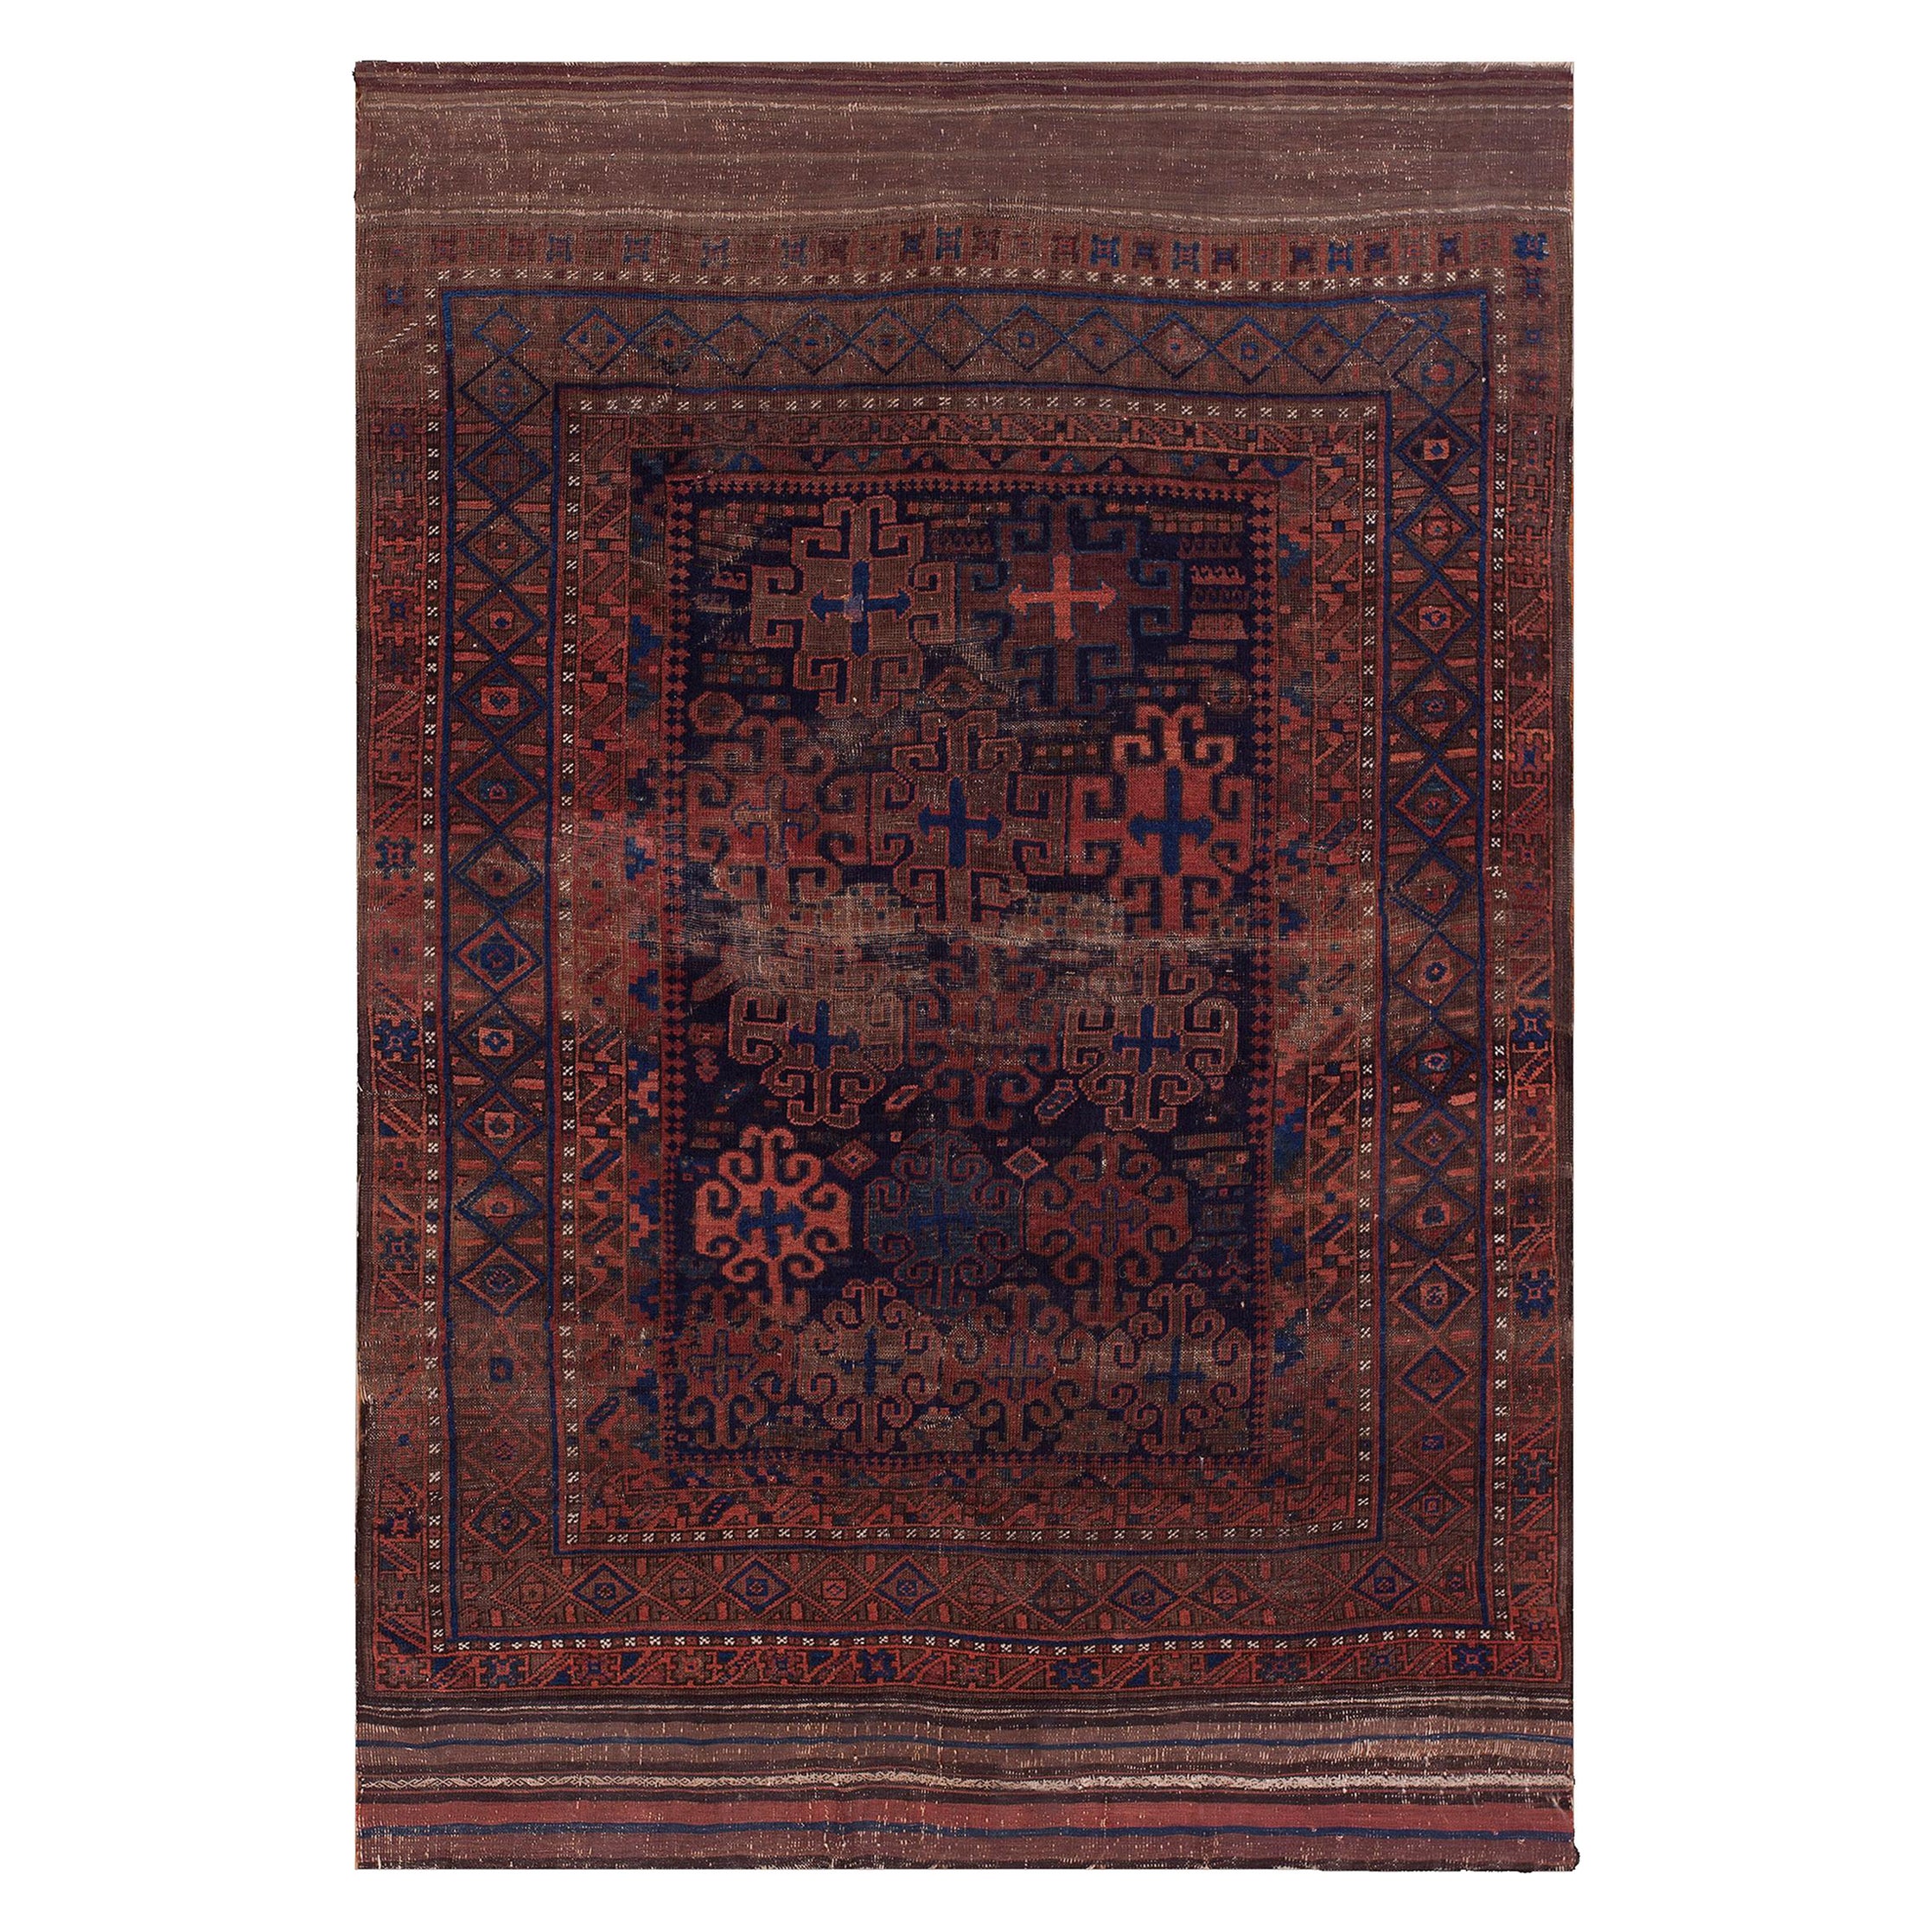 19th Century Afghan Baluch Main Carpet ( 5' x 7' - 152 x 213 cm )